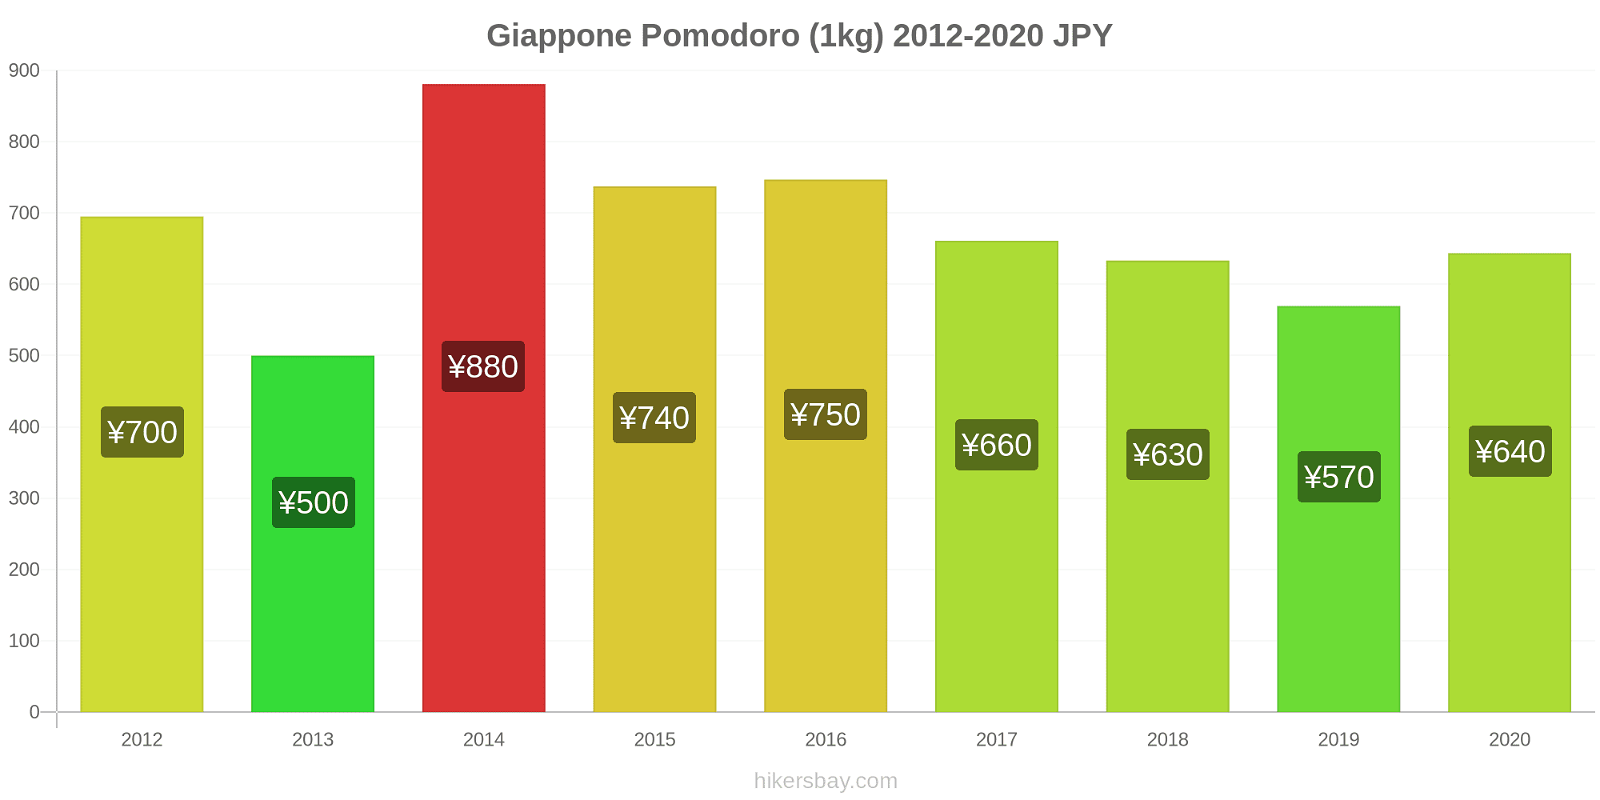 Giappone variazioni di prezzo Pomodoro (1kg) hikersbay.com